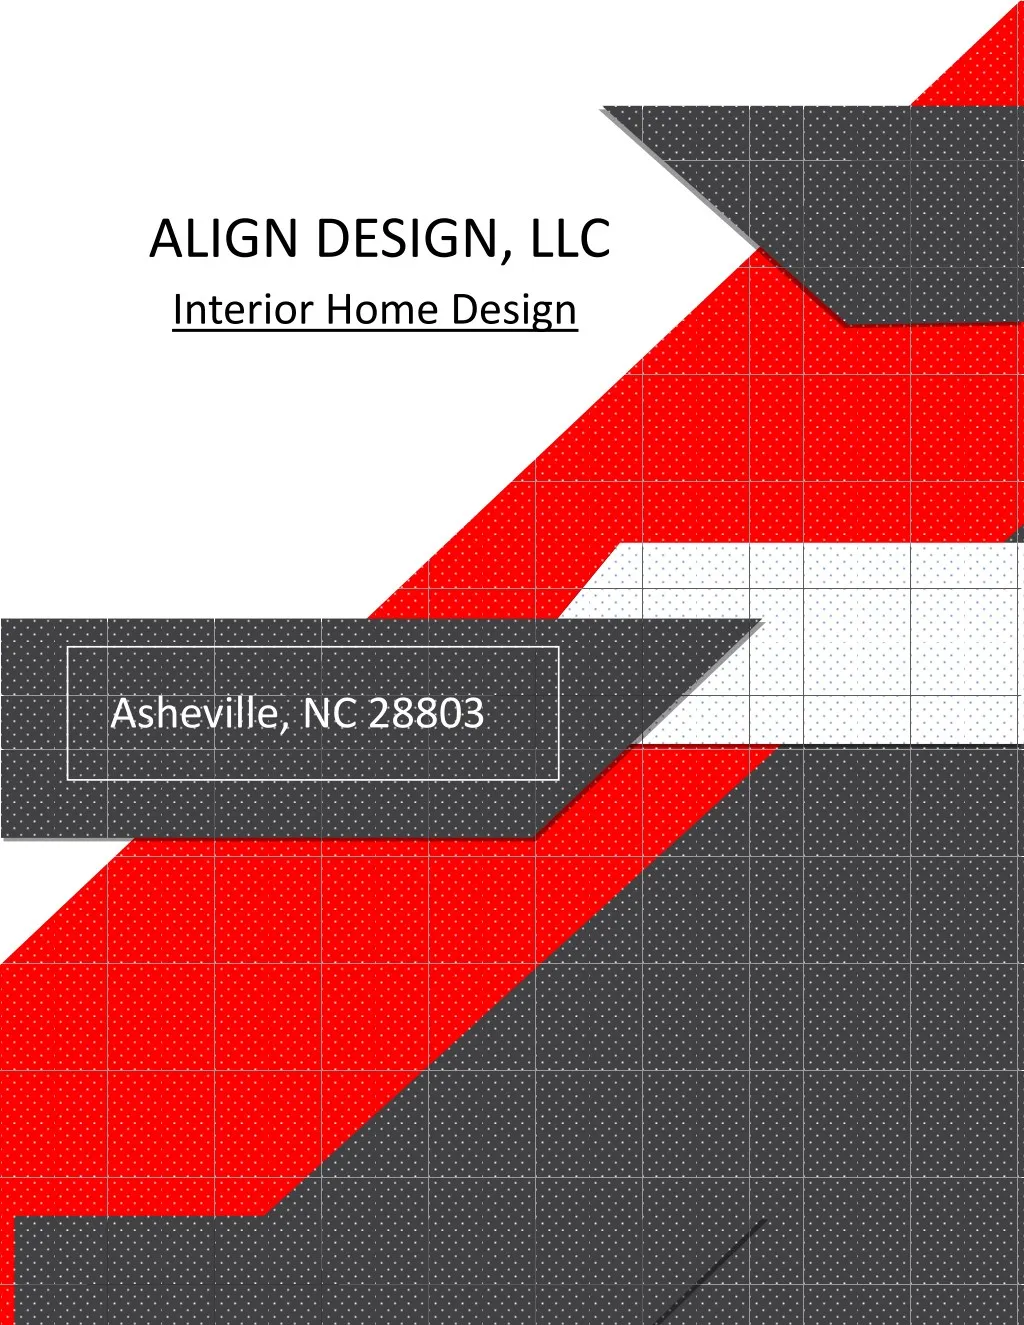 align design llc interior home design